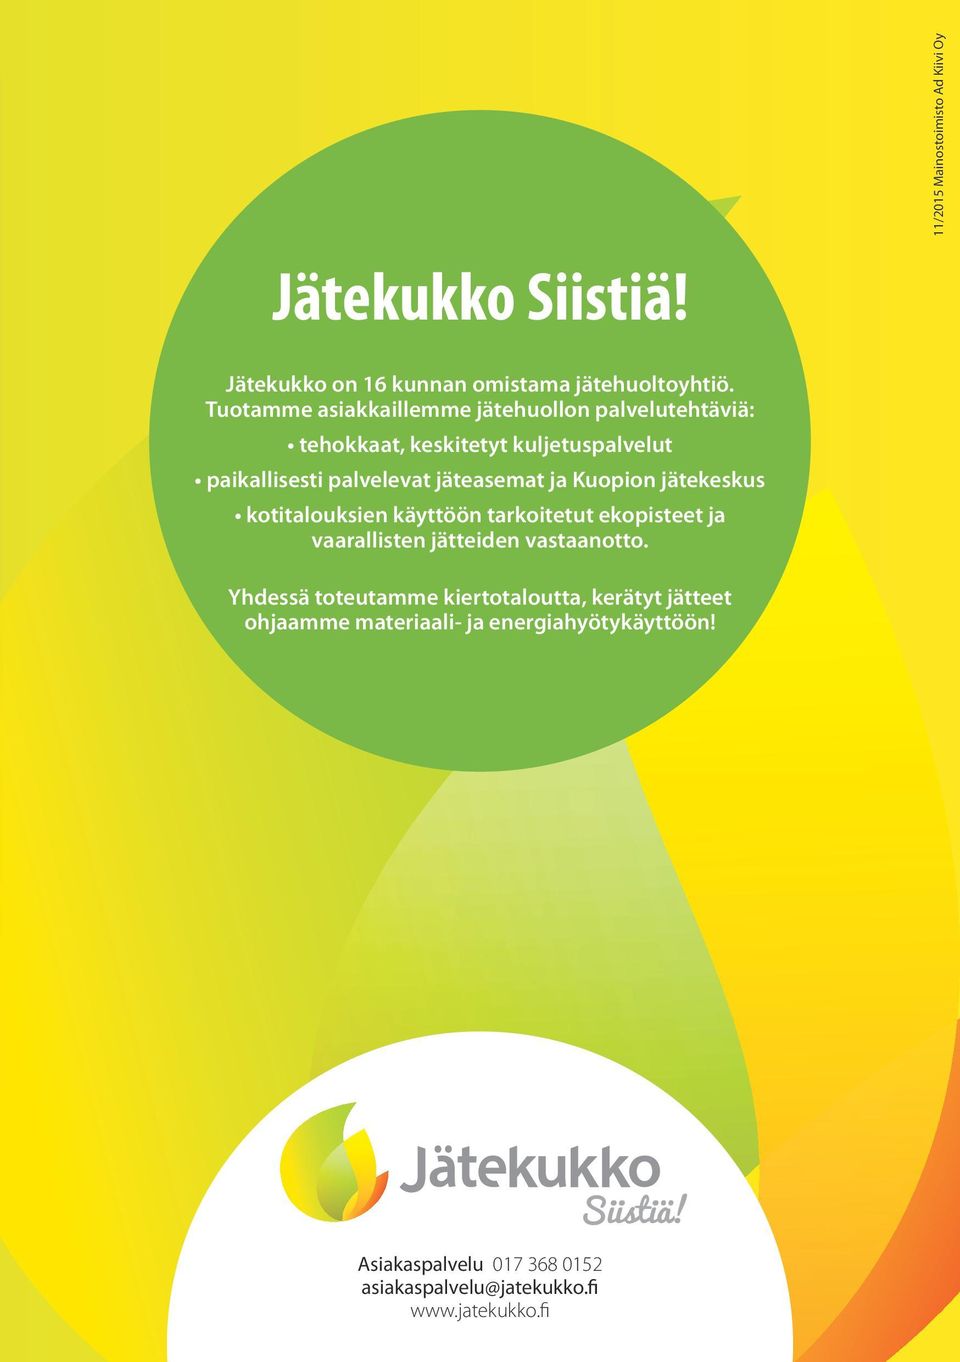 jäteasemat ja Kuopion jätekeskus kotitalouksien käyttöön tarkoitetut ekopisteet ja vaarallisten jätteiden vastaanotto.